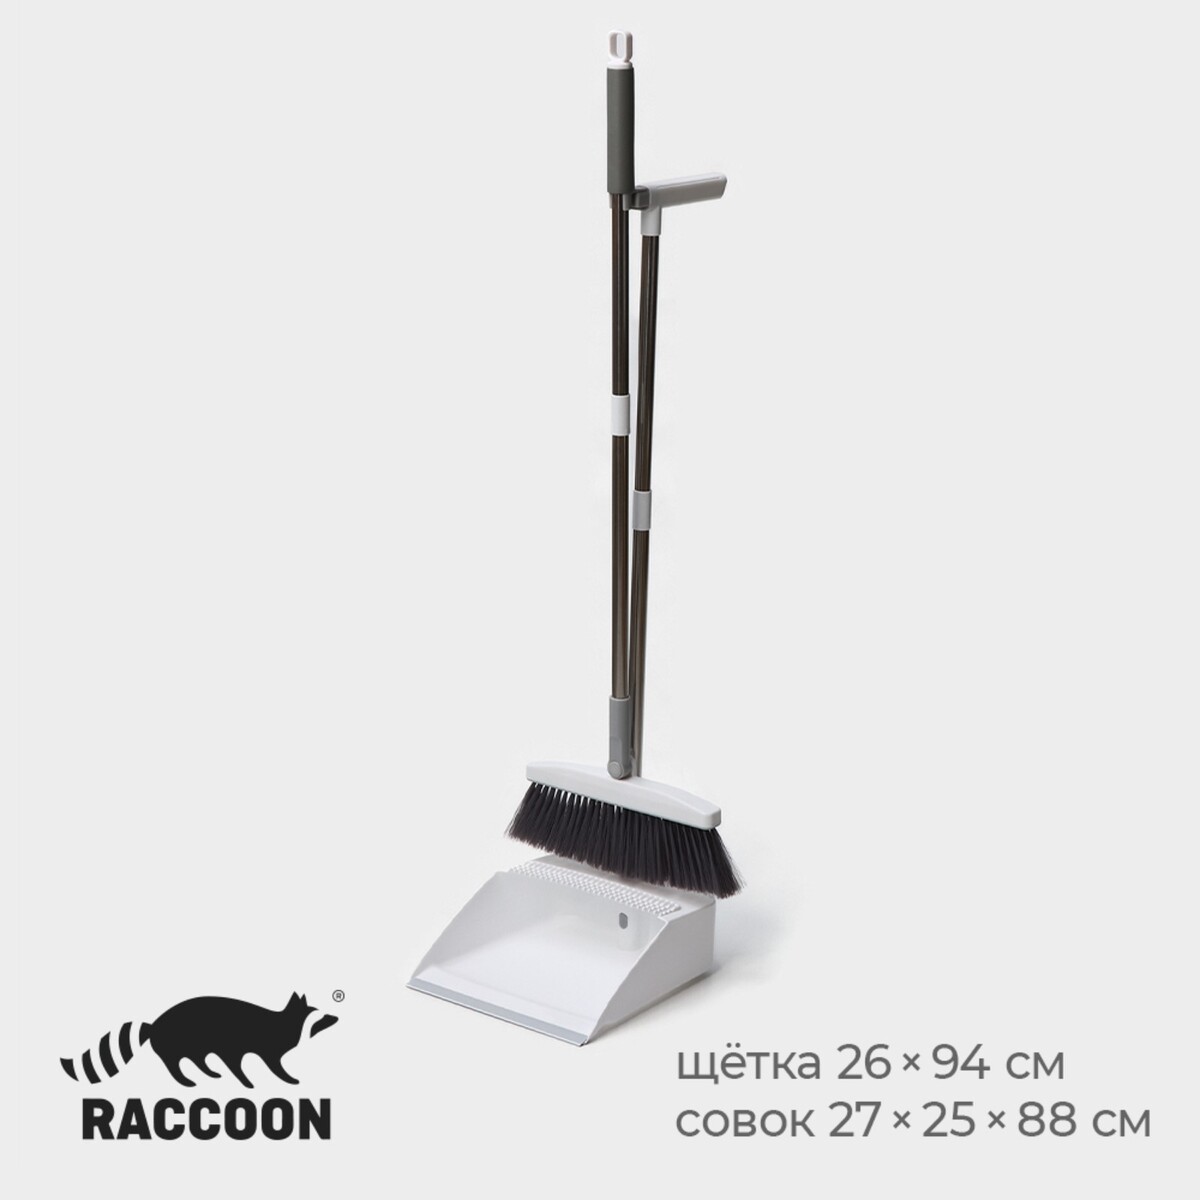 Набор для уборки raccoon, 2 предмета: щетка 26×94 см, совок 27×25×88 см, цвет белый Raccoon